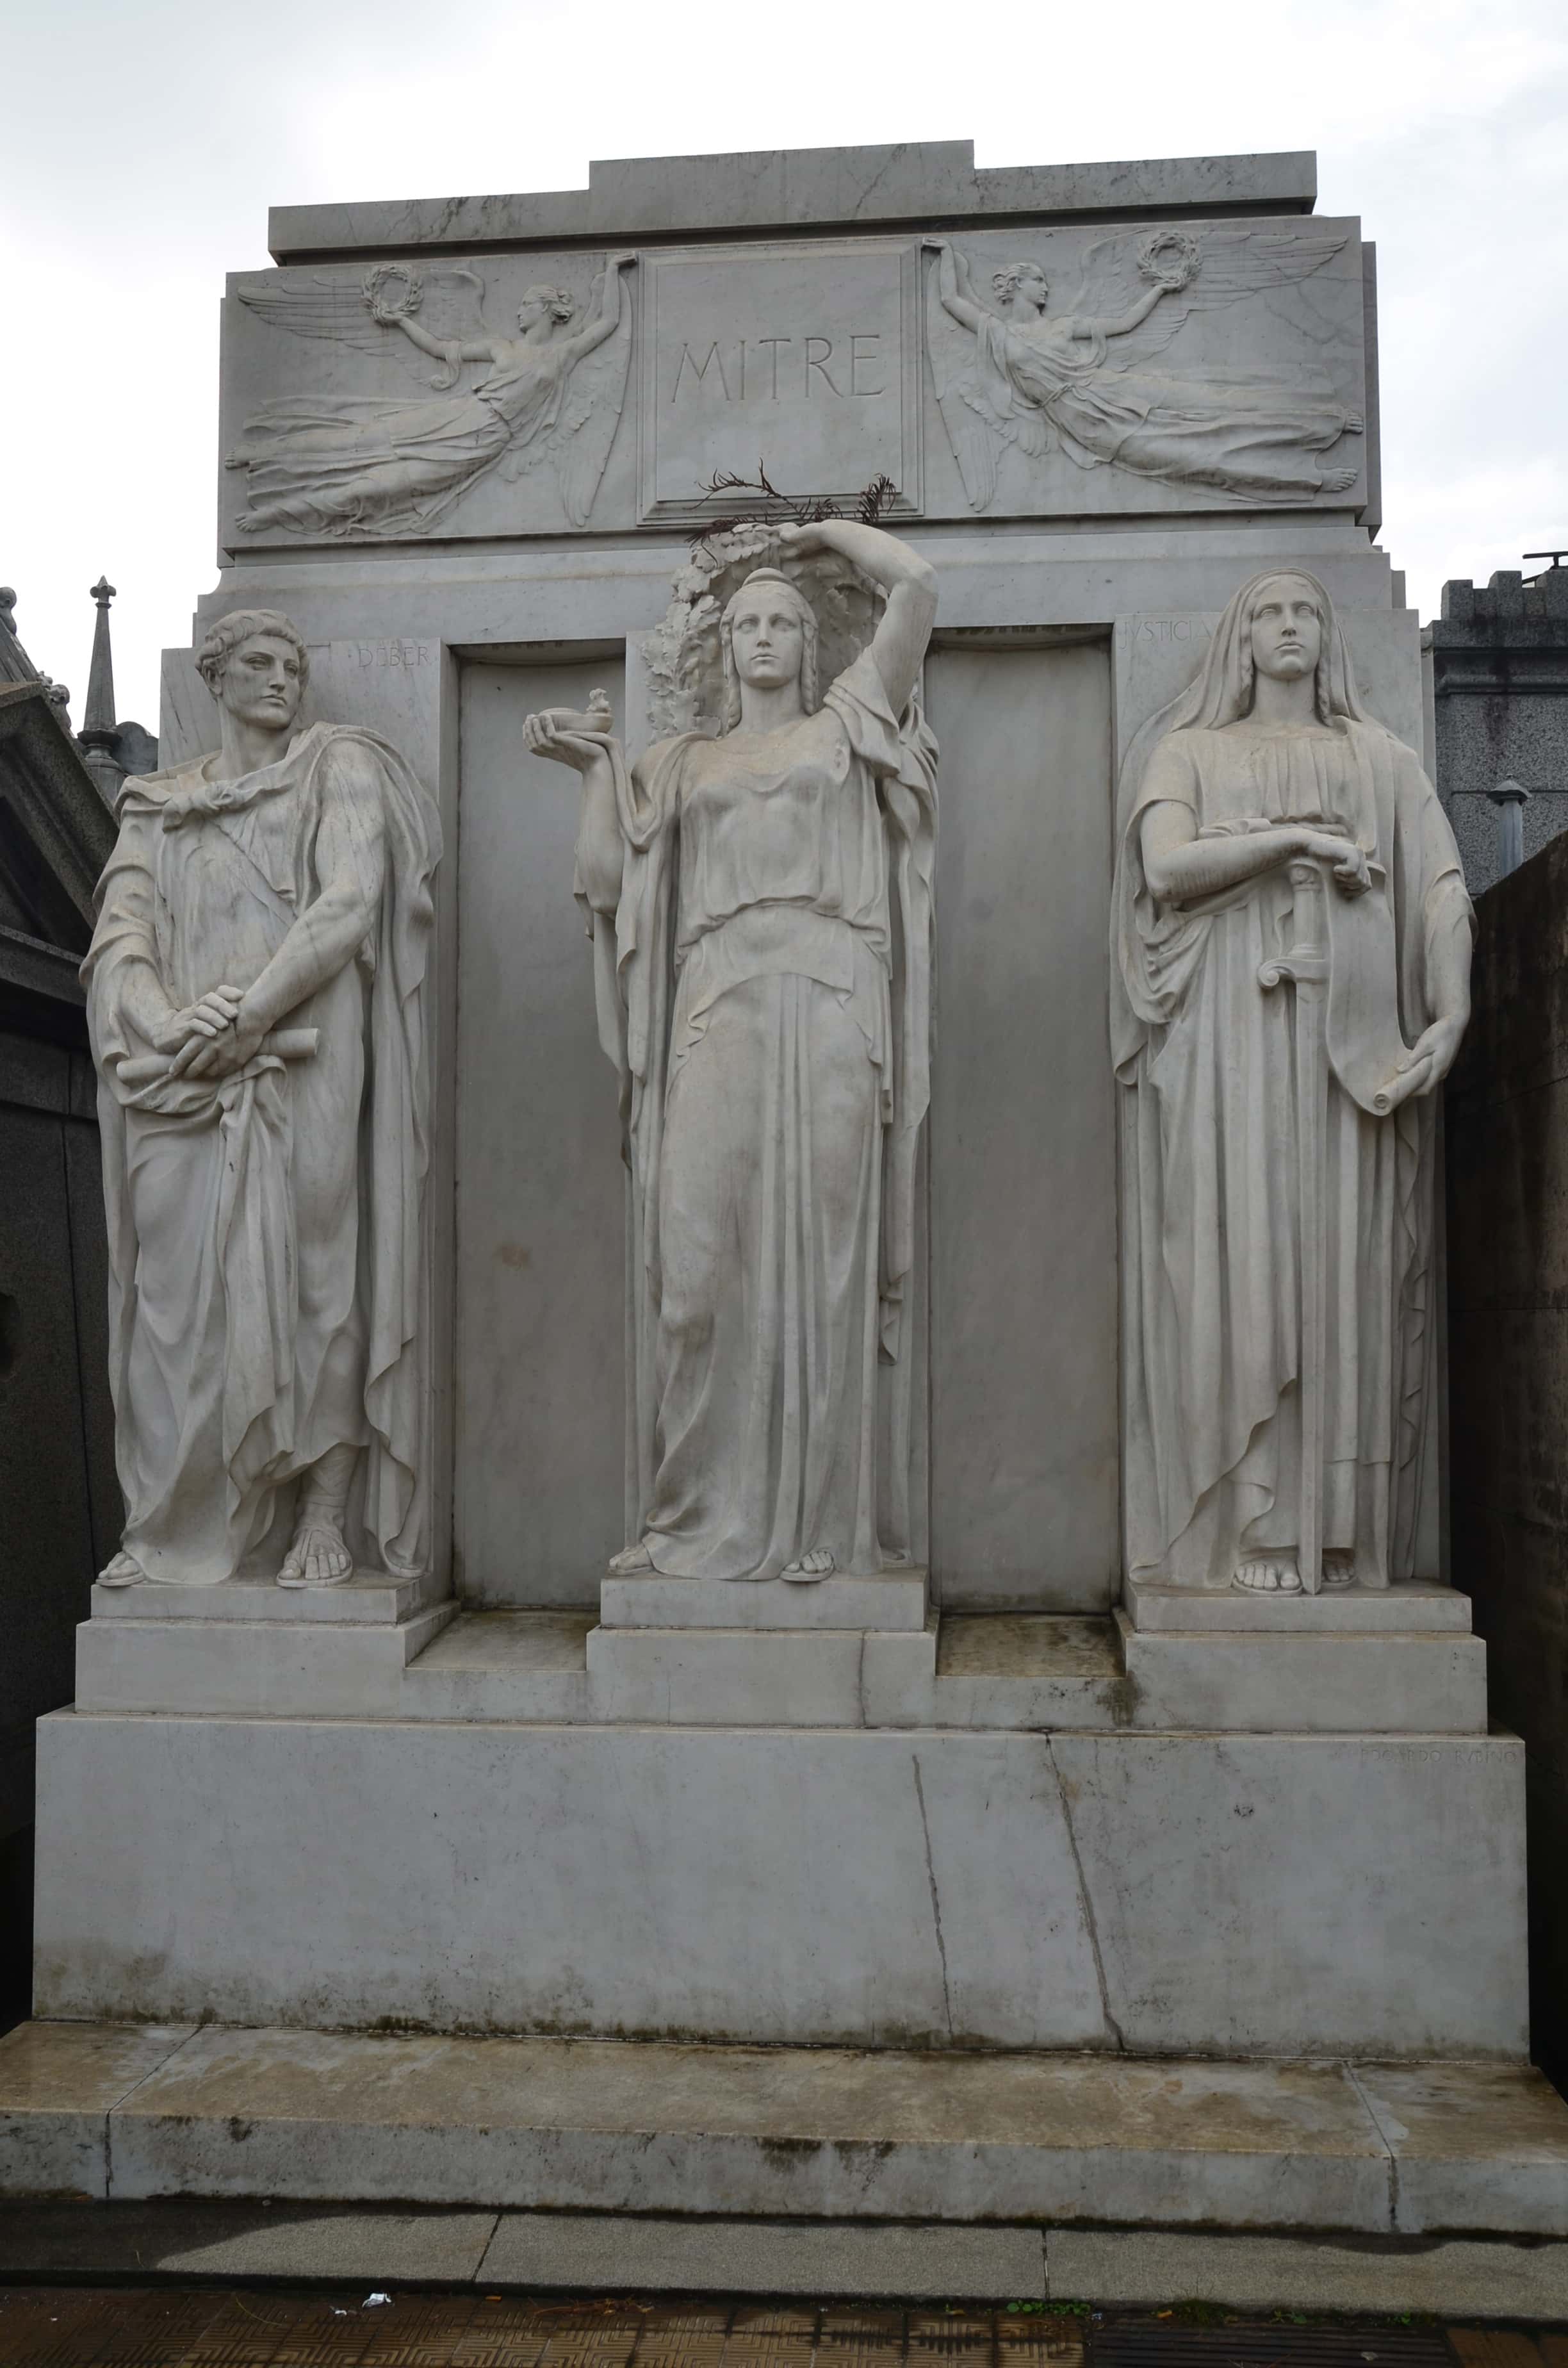 Tomb of Bartolomé Mitre at Cementerio de la Recoleta in Buenos Aires, Argentina